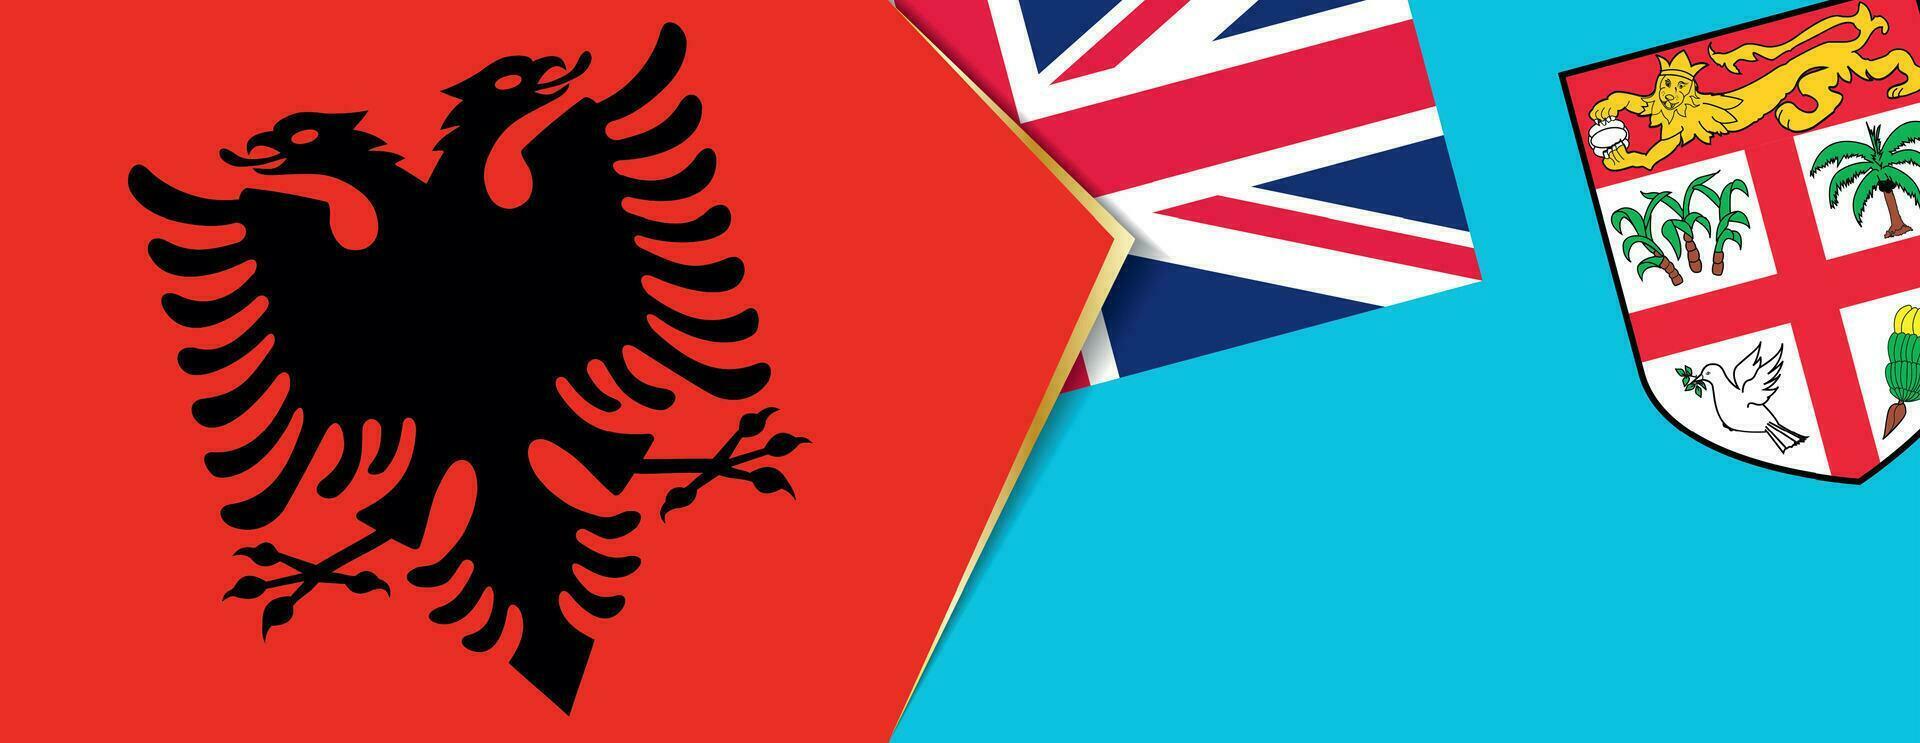 albania och fiji flaggor, två vektor flaggor.